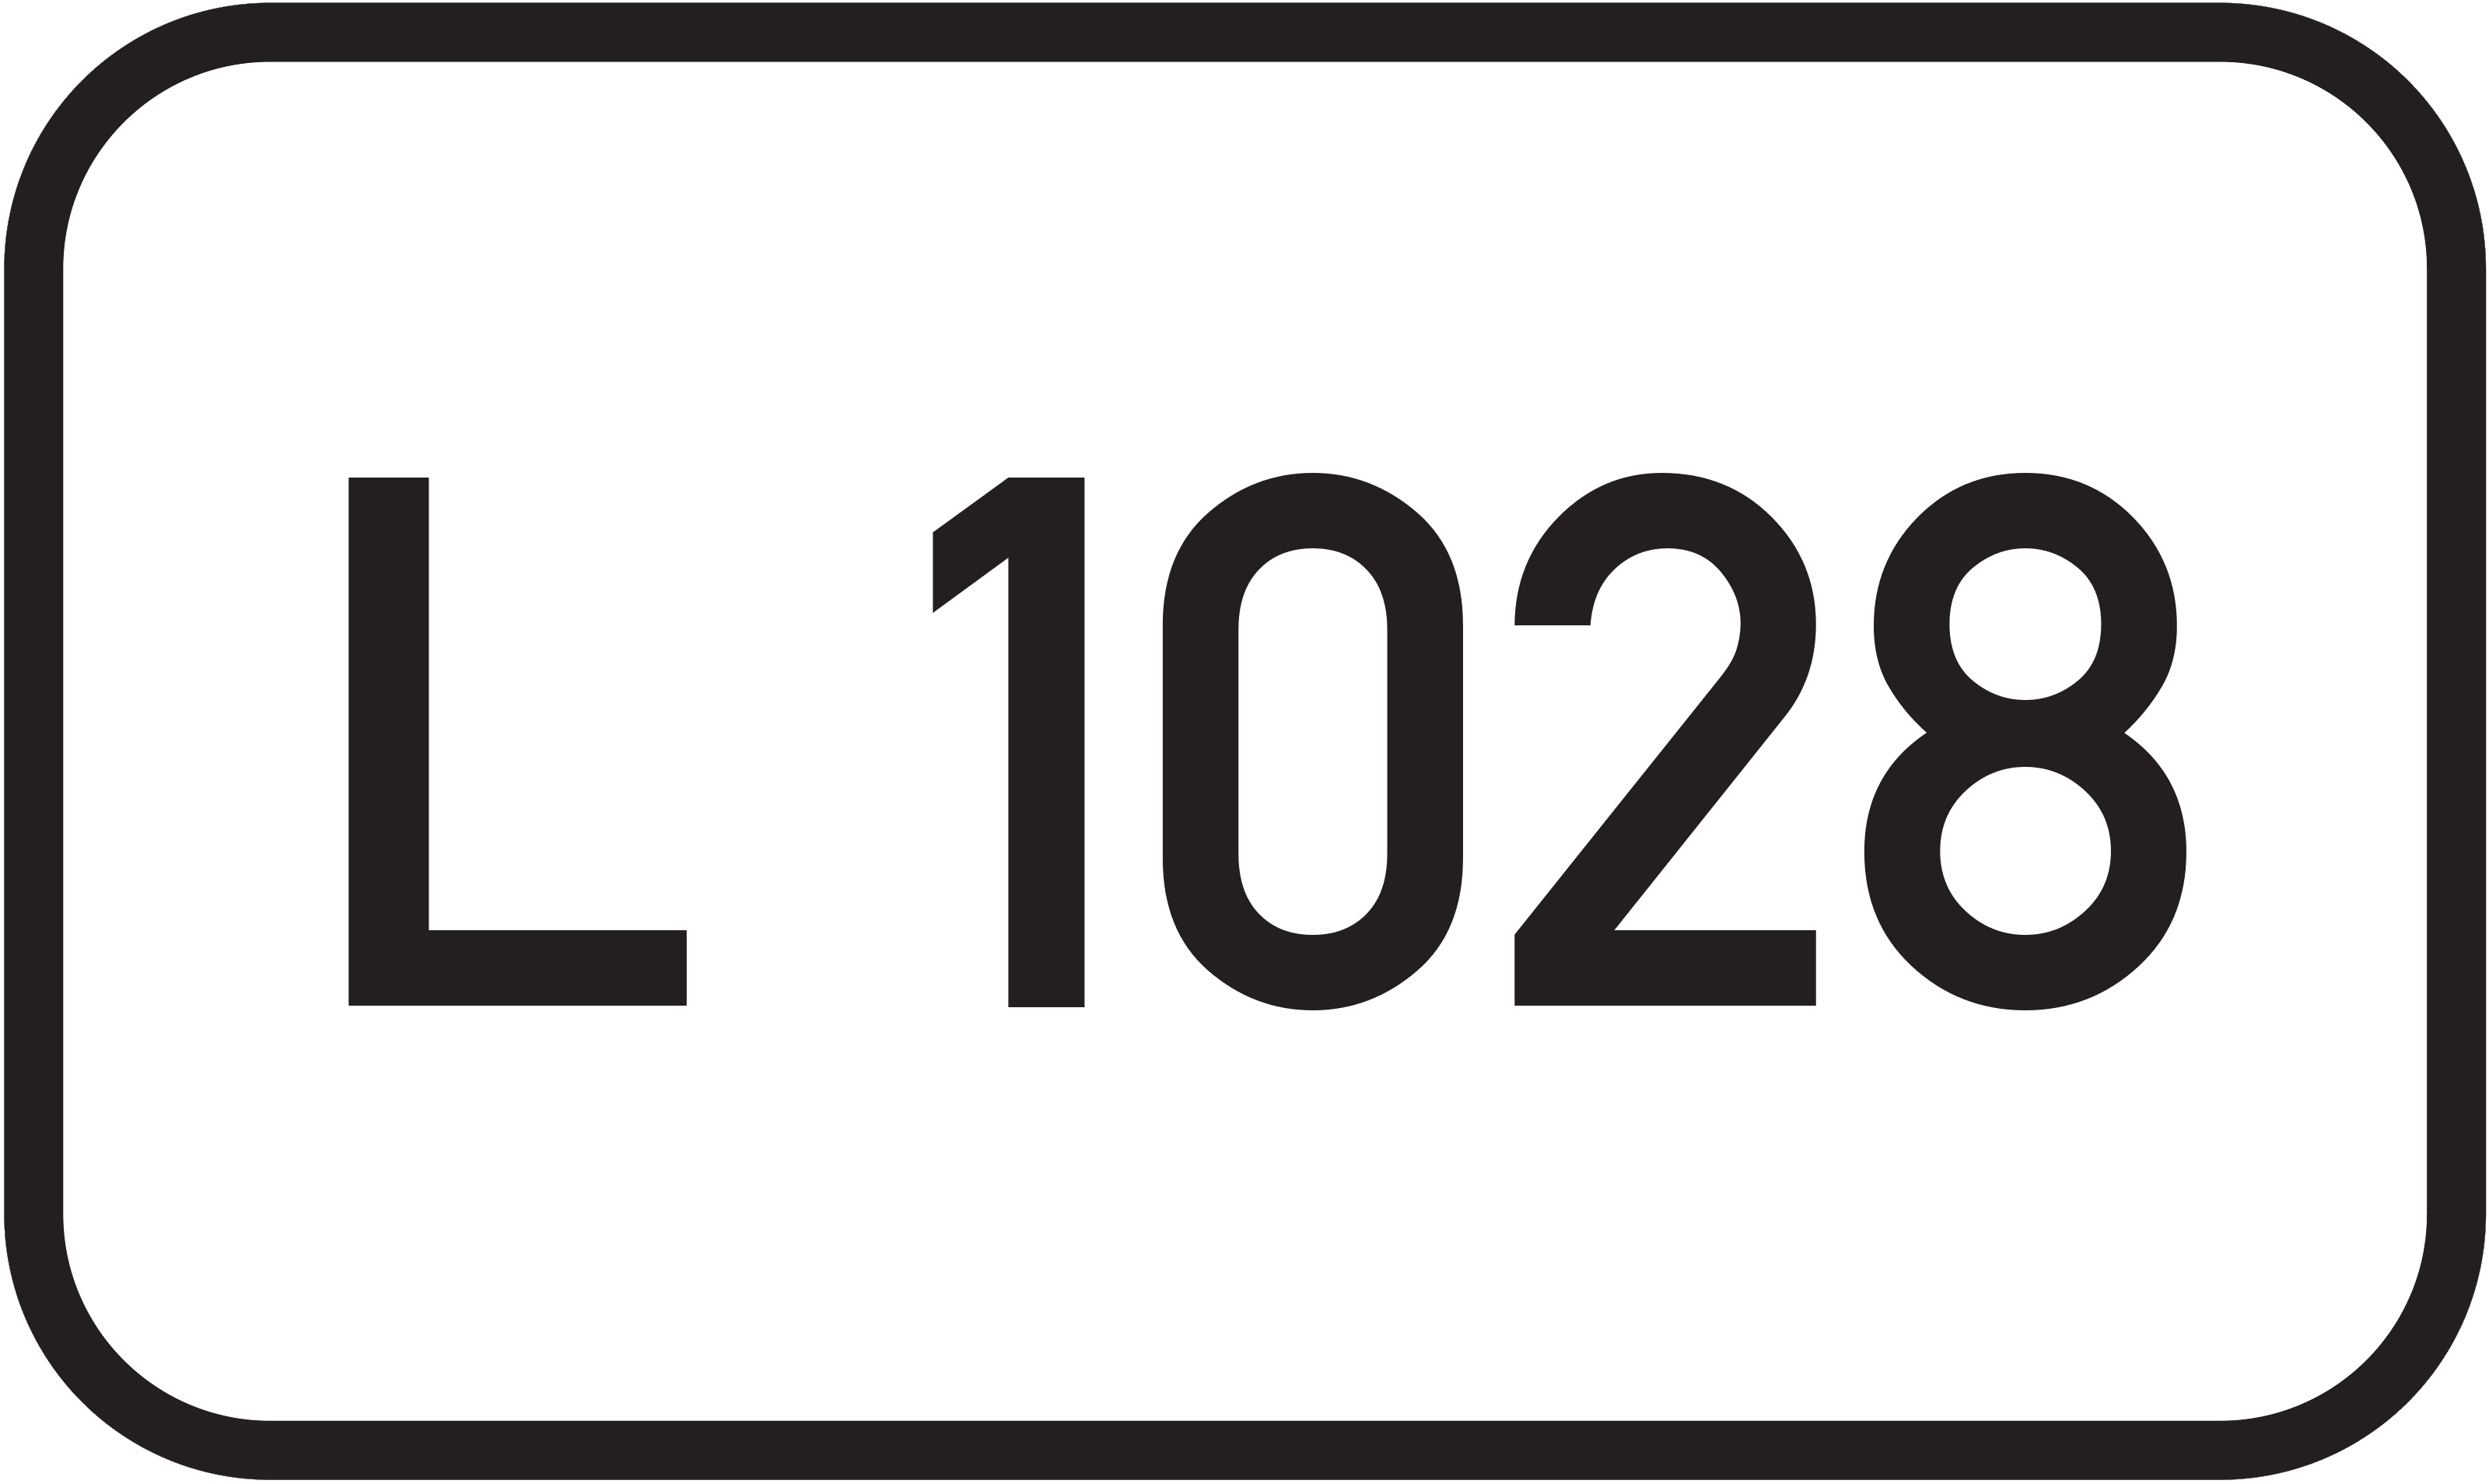 Landesstraße L 1028